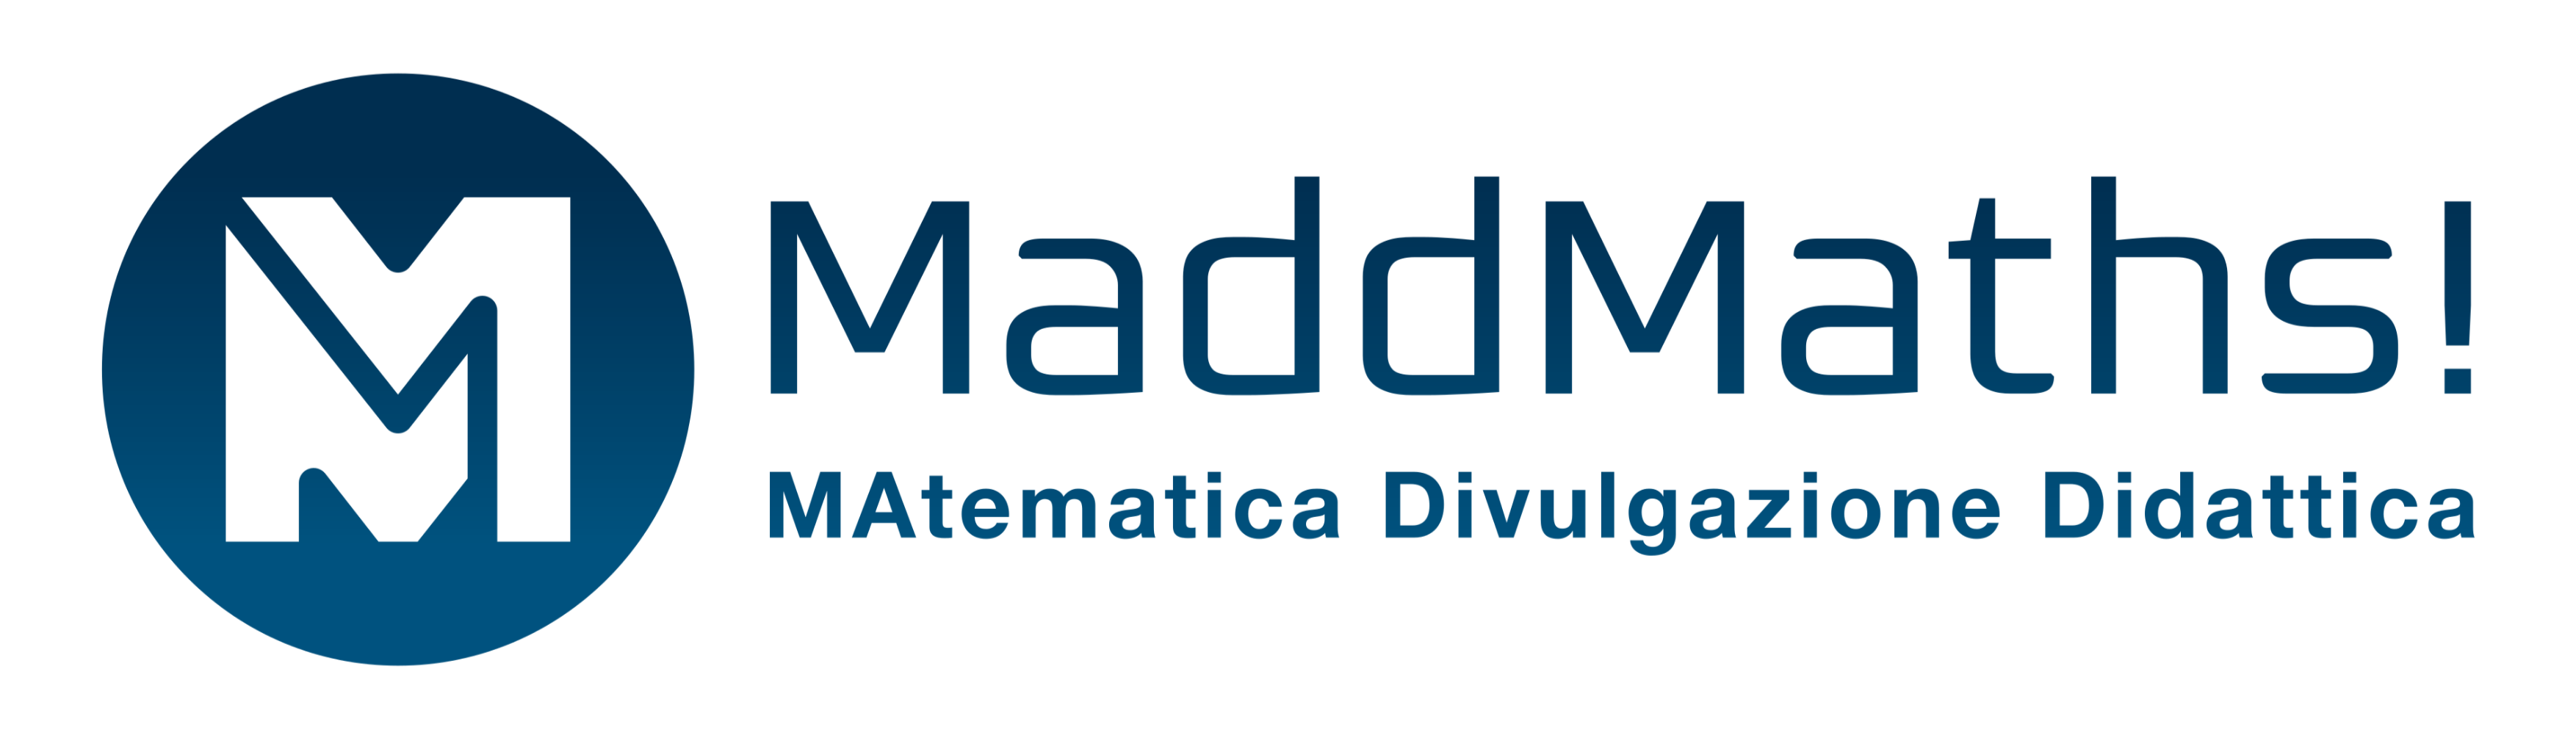 logo maddmaths